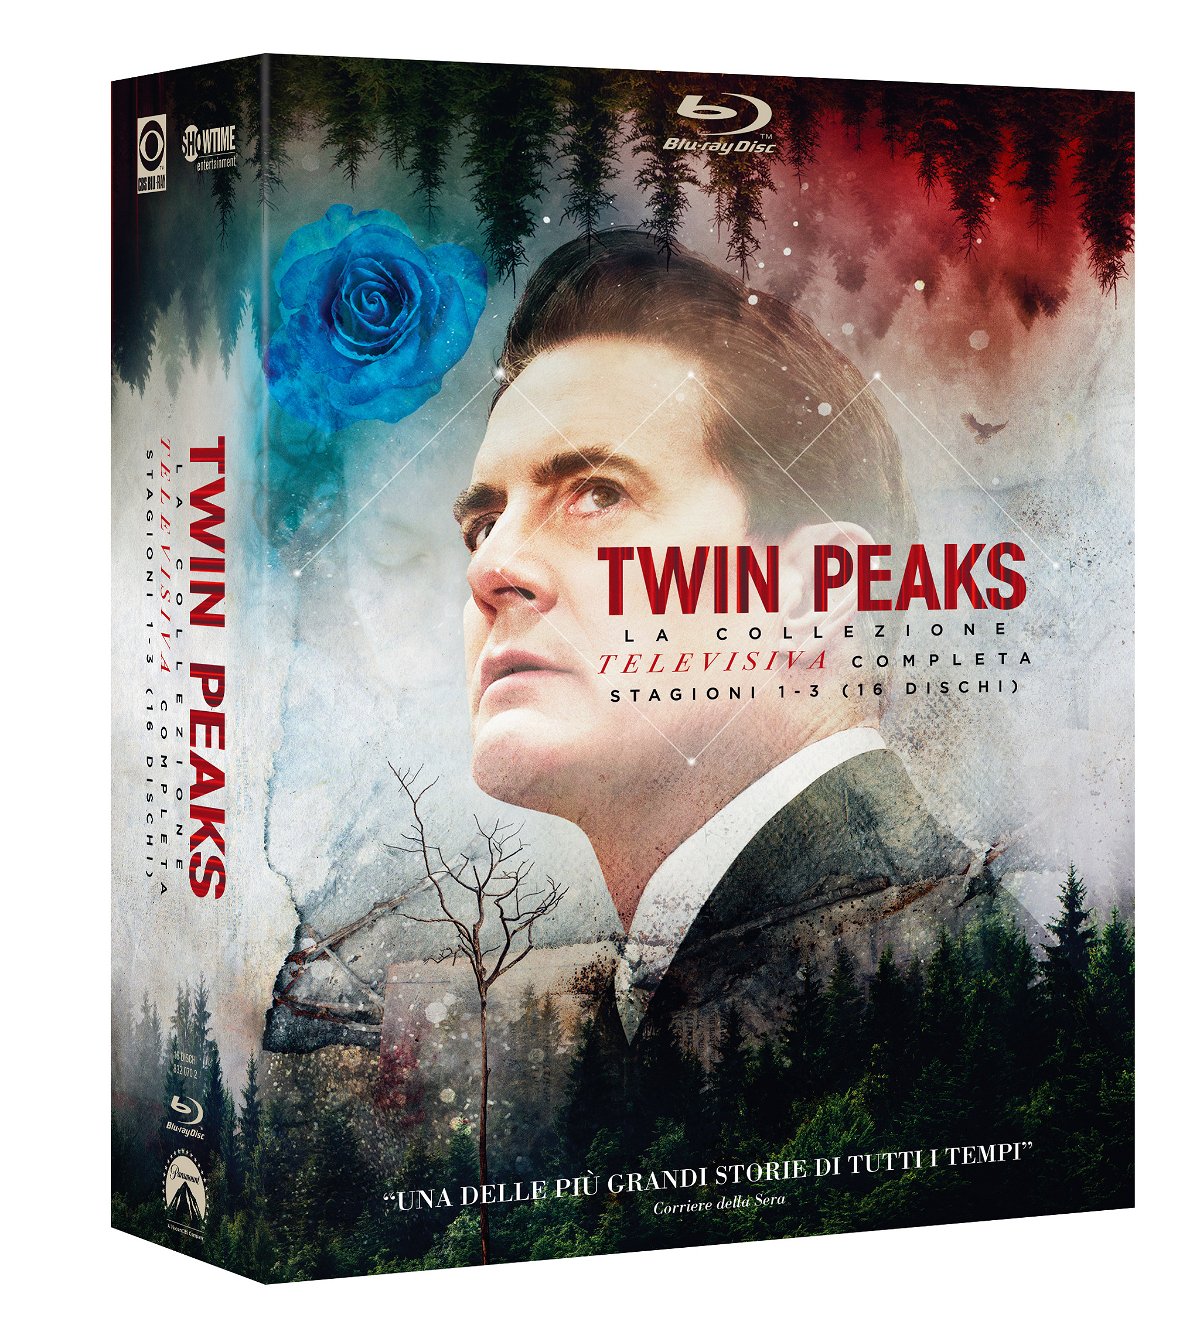 L'agente Dale Cooper sulla cover del cofanetto Blu-ray di Twin Peaks